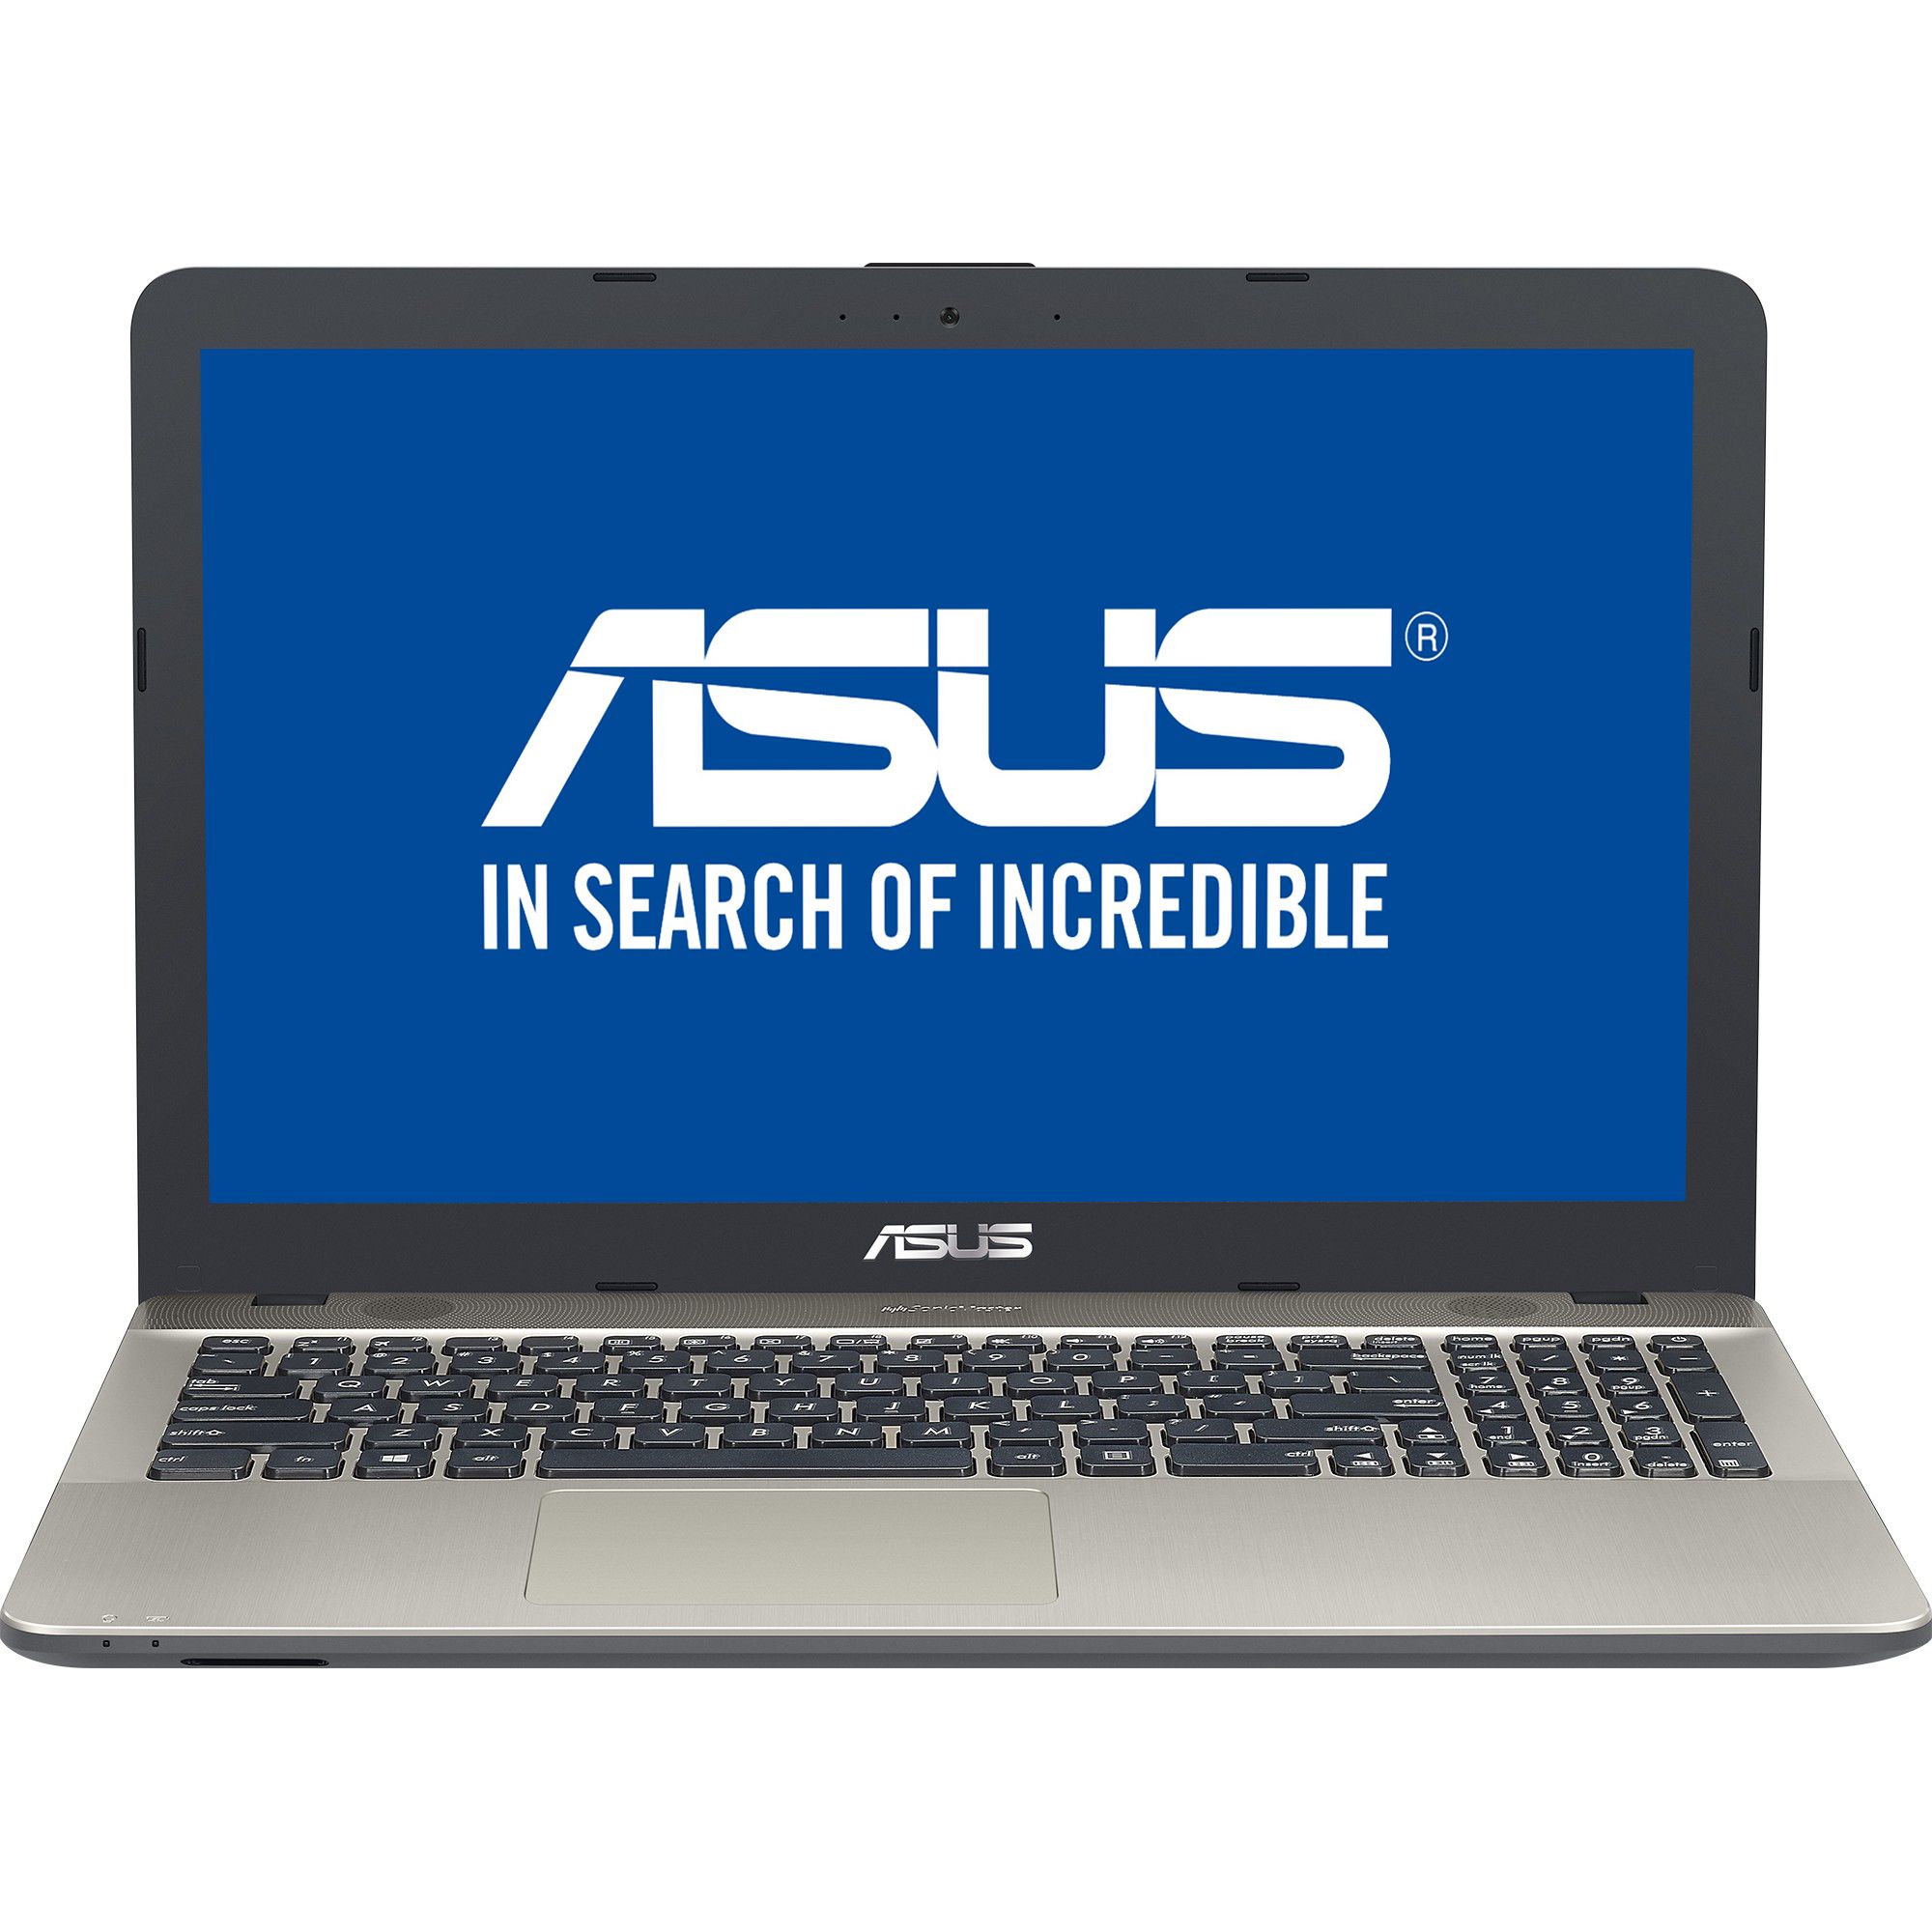 Laptop ASUS A541UJ-GO422, Intel Core i3-6006U, 4GB DDR4, HDD 500GB, nVidia GeForce 920M 2GB, Free DOS